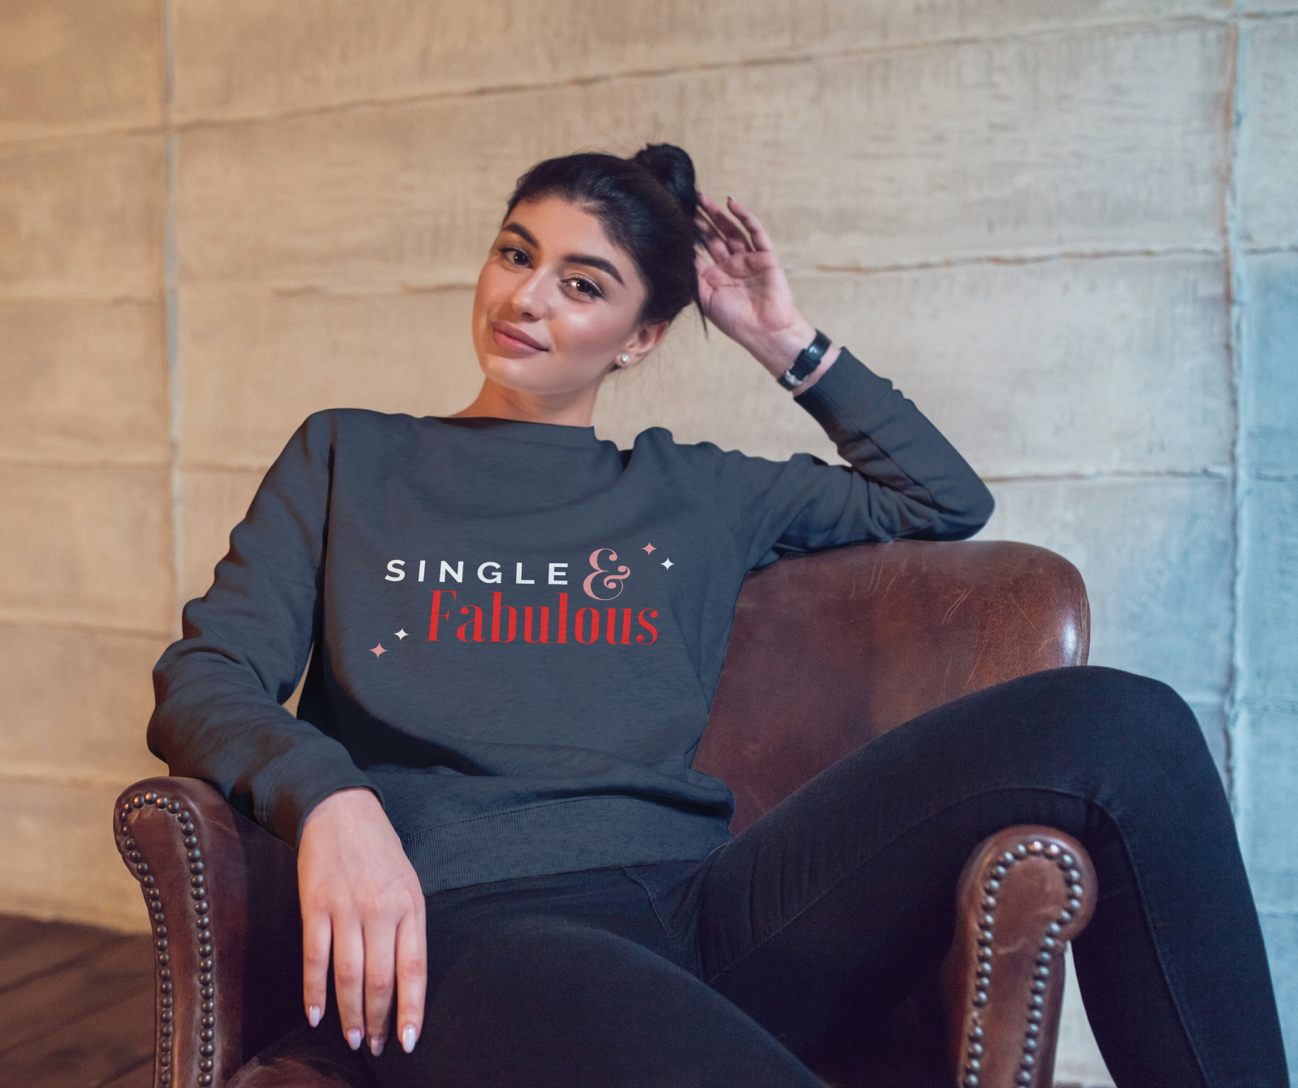 Single & Fabulous Sweatshirt